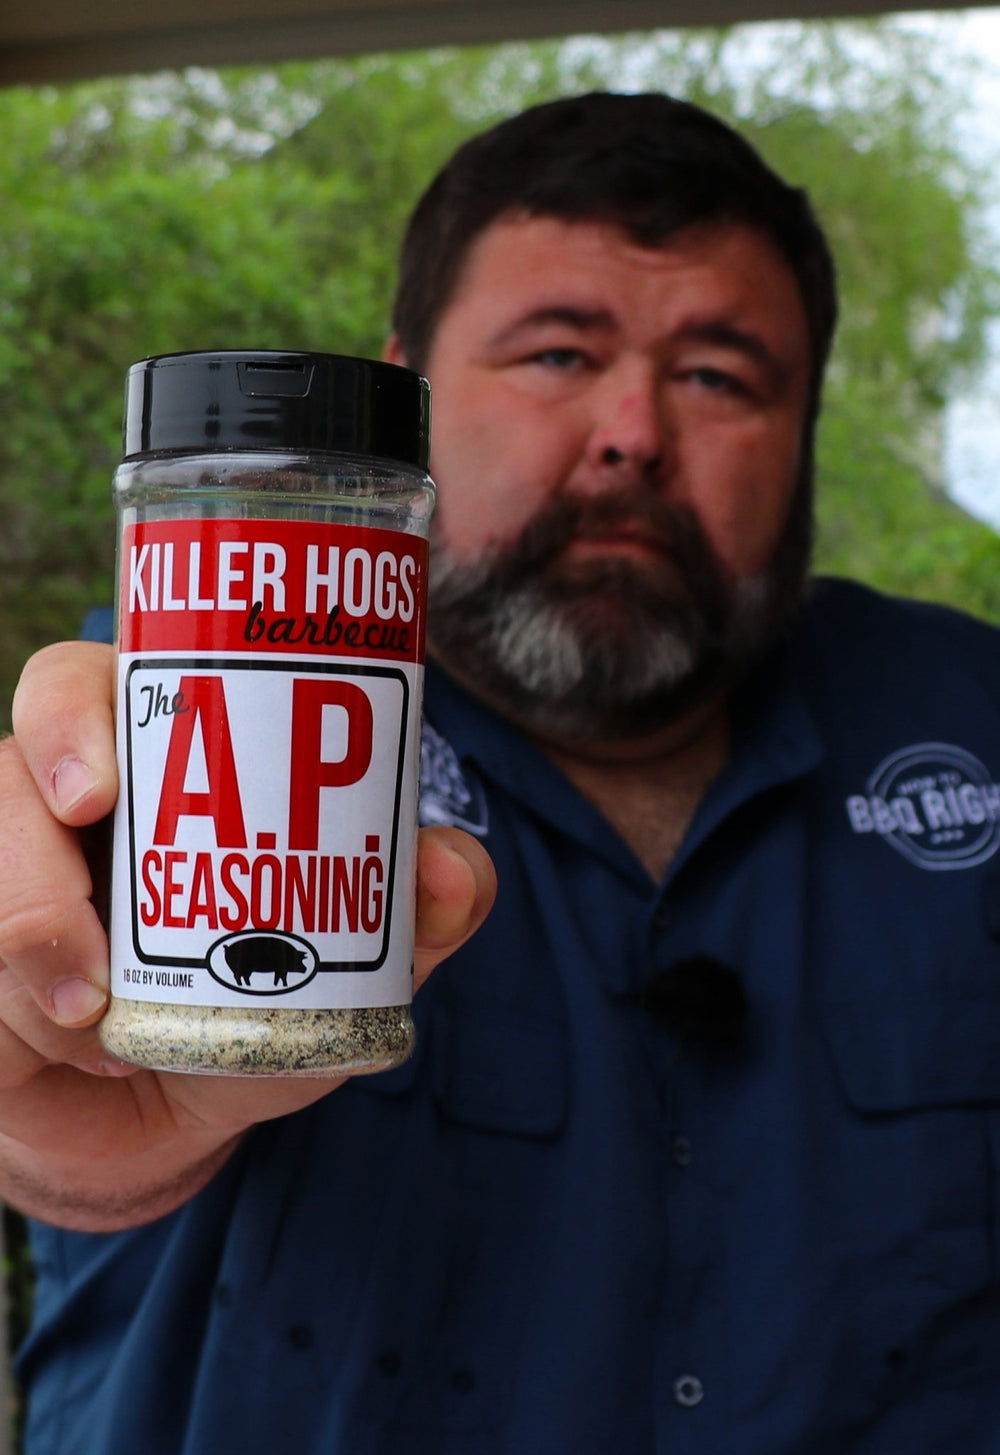 https://h2qshop.com/cdn/shop/products/killer-hogs-the-ap-seasoning-437308_1000x.jpg?v=1676647988